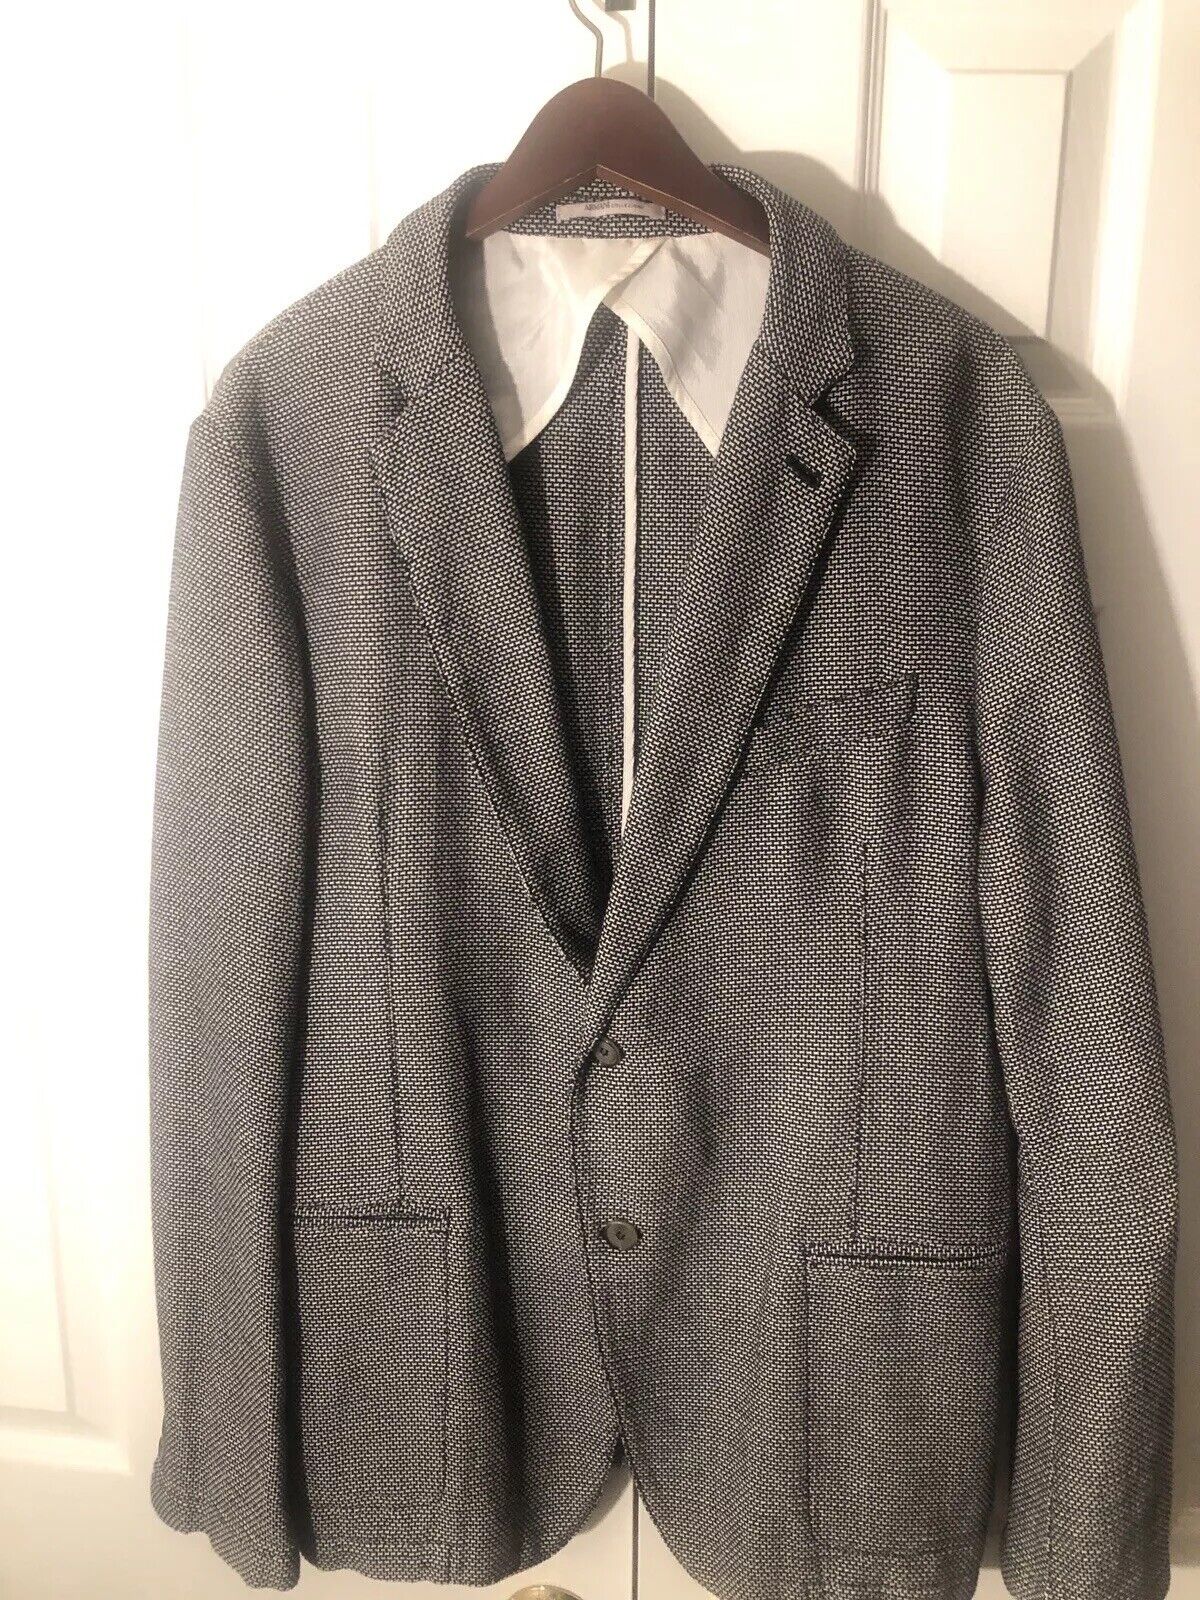 Armani Collezioni Mens Suit Jacket Weave Sport Coat Size 44r